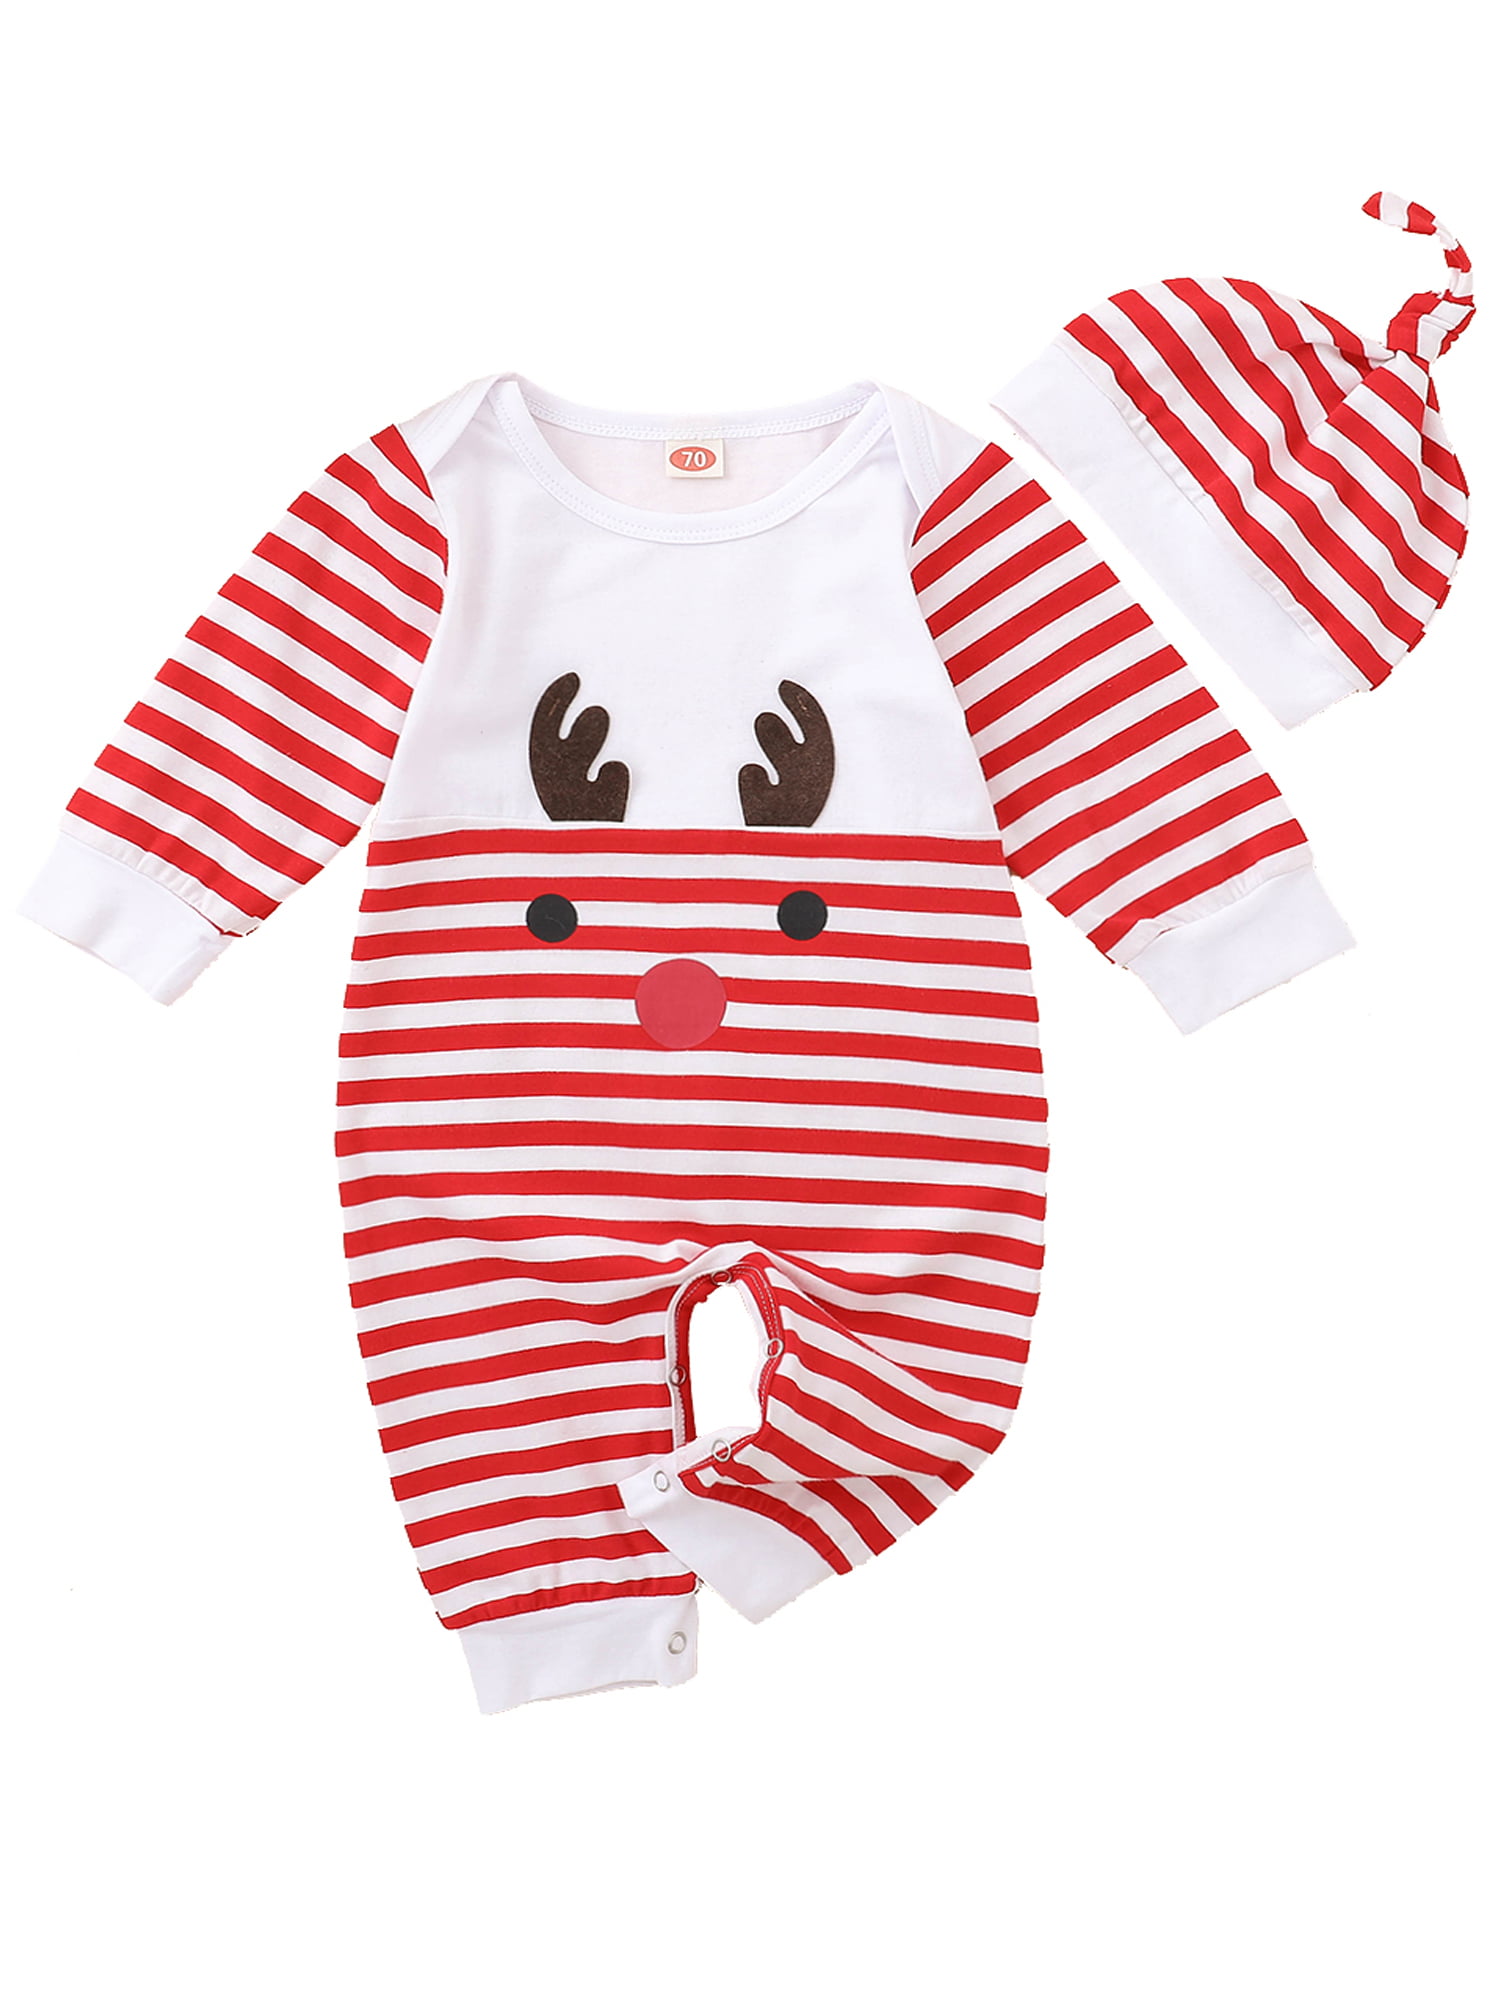 Details about   Stylish Formal Newborn Infant Clothes Cotton Short Suit Jumpsuit Shorts 2PCS/set 